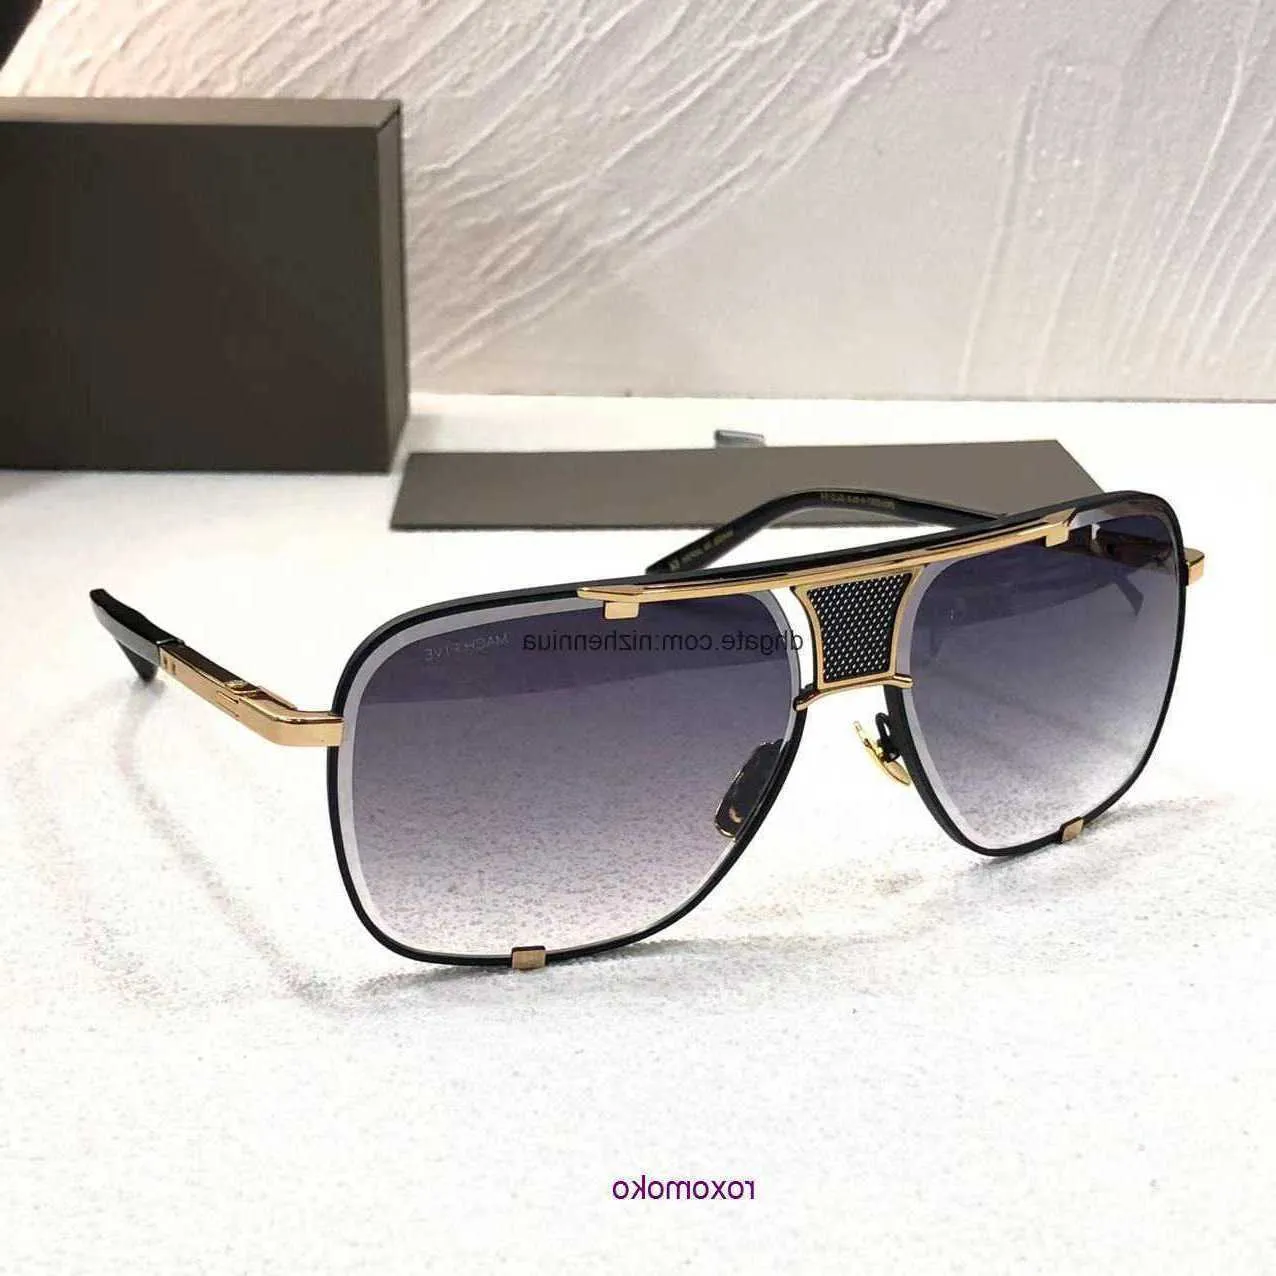 Ontwerper een Dita Mach Five Drx 2087 Topmerk Hoge kwaliteit luxe zonnebrillen voor heren Dames Nieuwe verkoop Wereldberoemde goedkope show Italiaans met DOOS AHY2